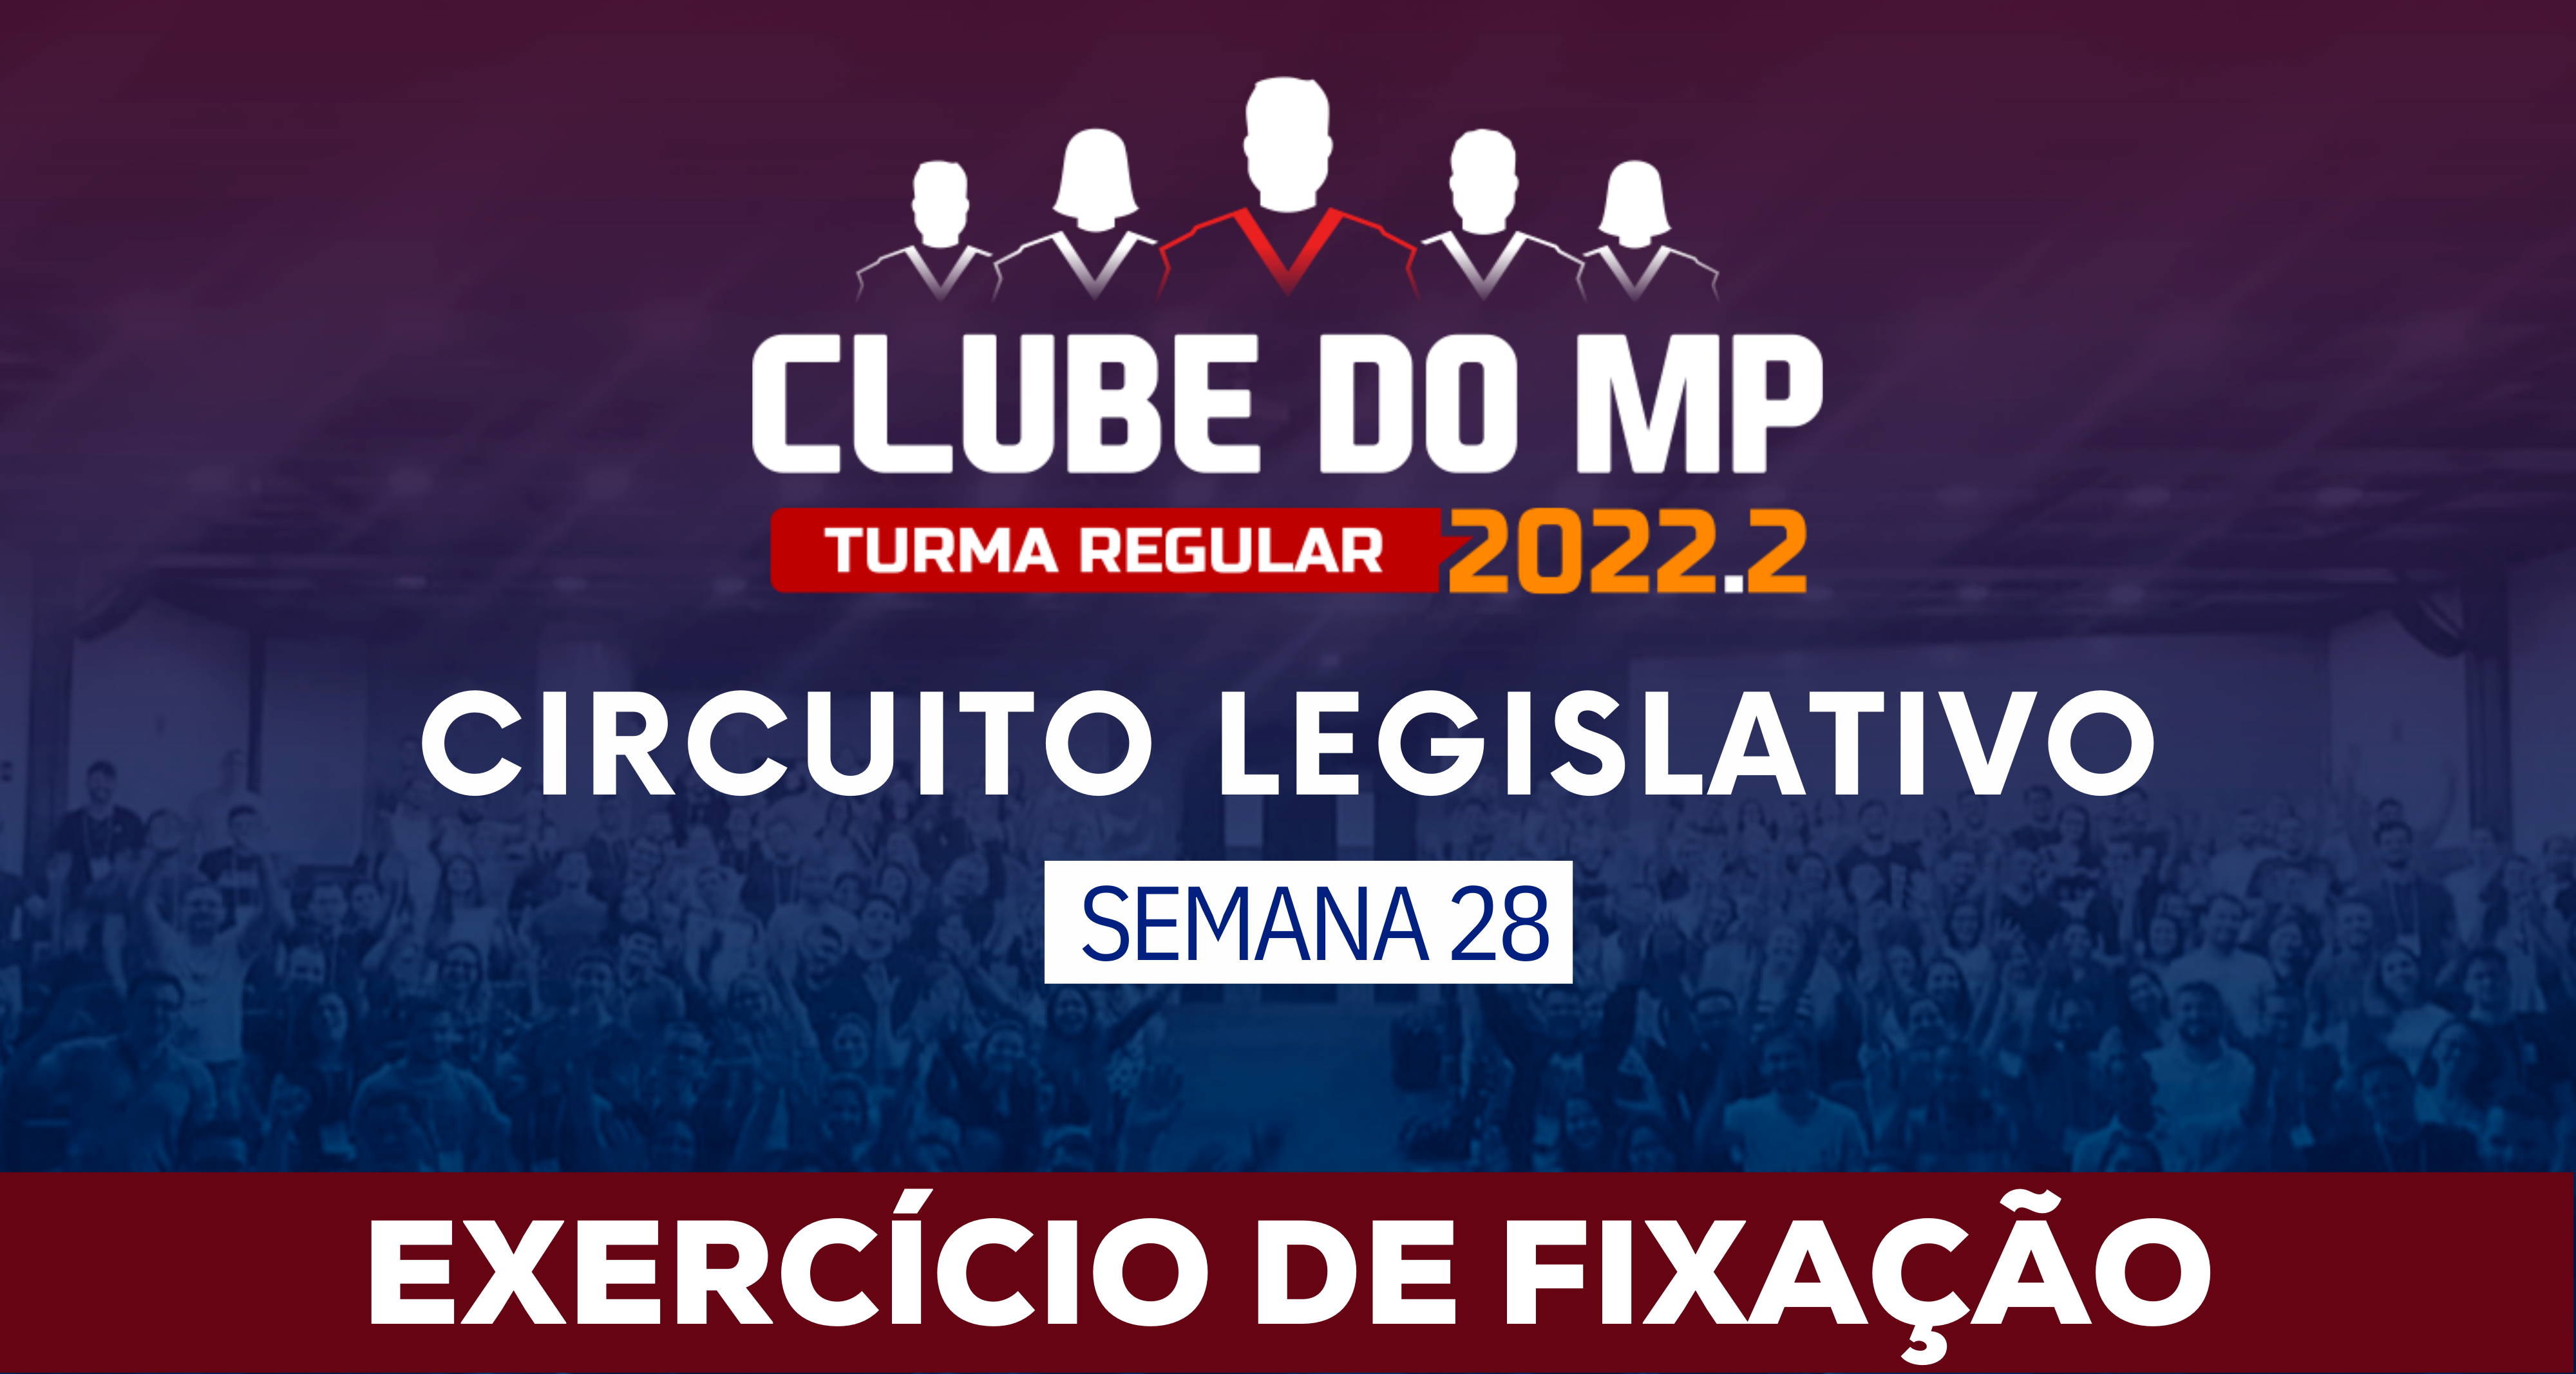 Circuito Legislativo 2022.2 (Clube do MP - Semana 28)